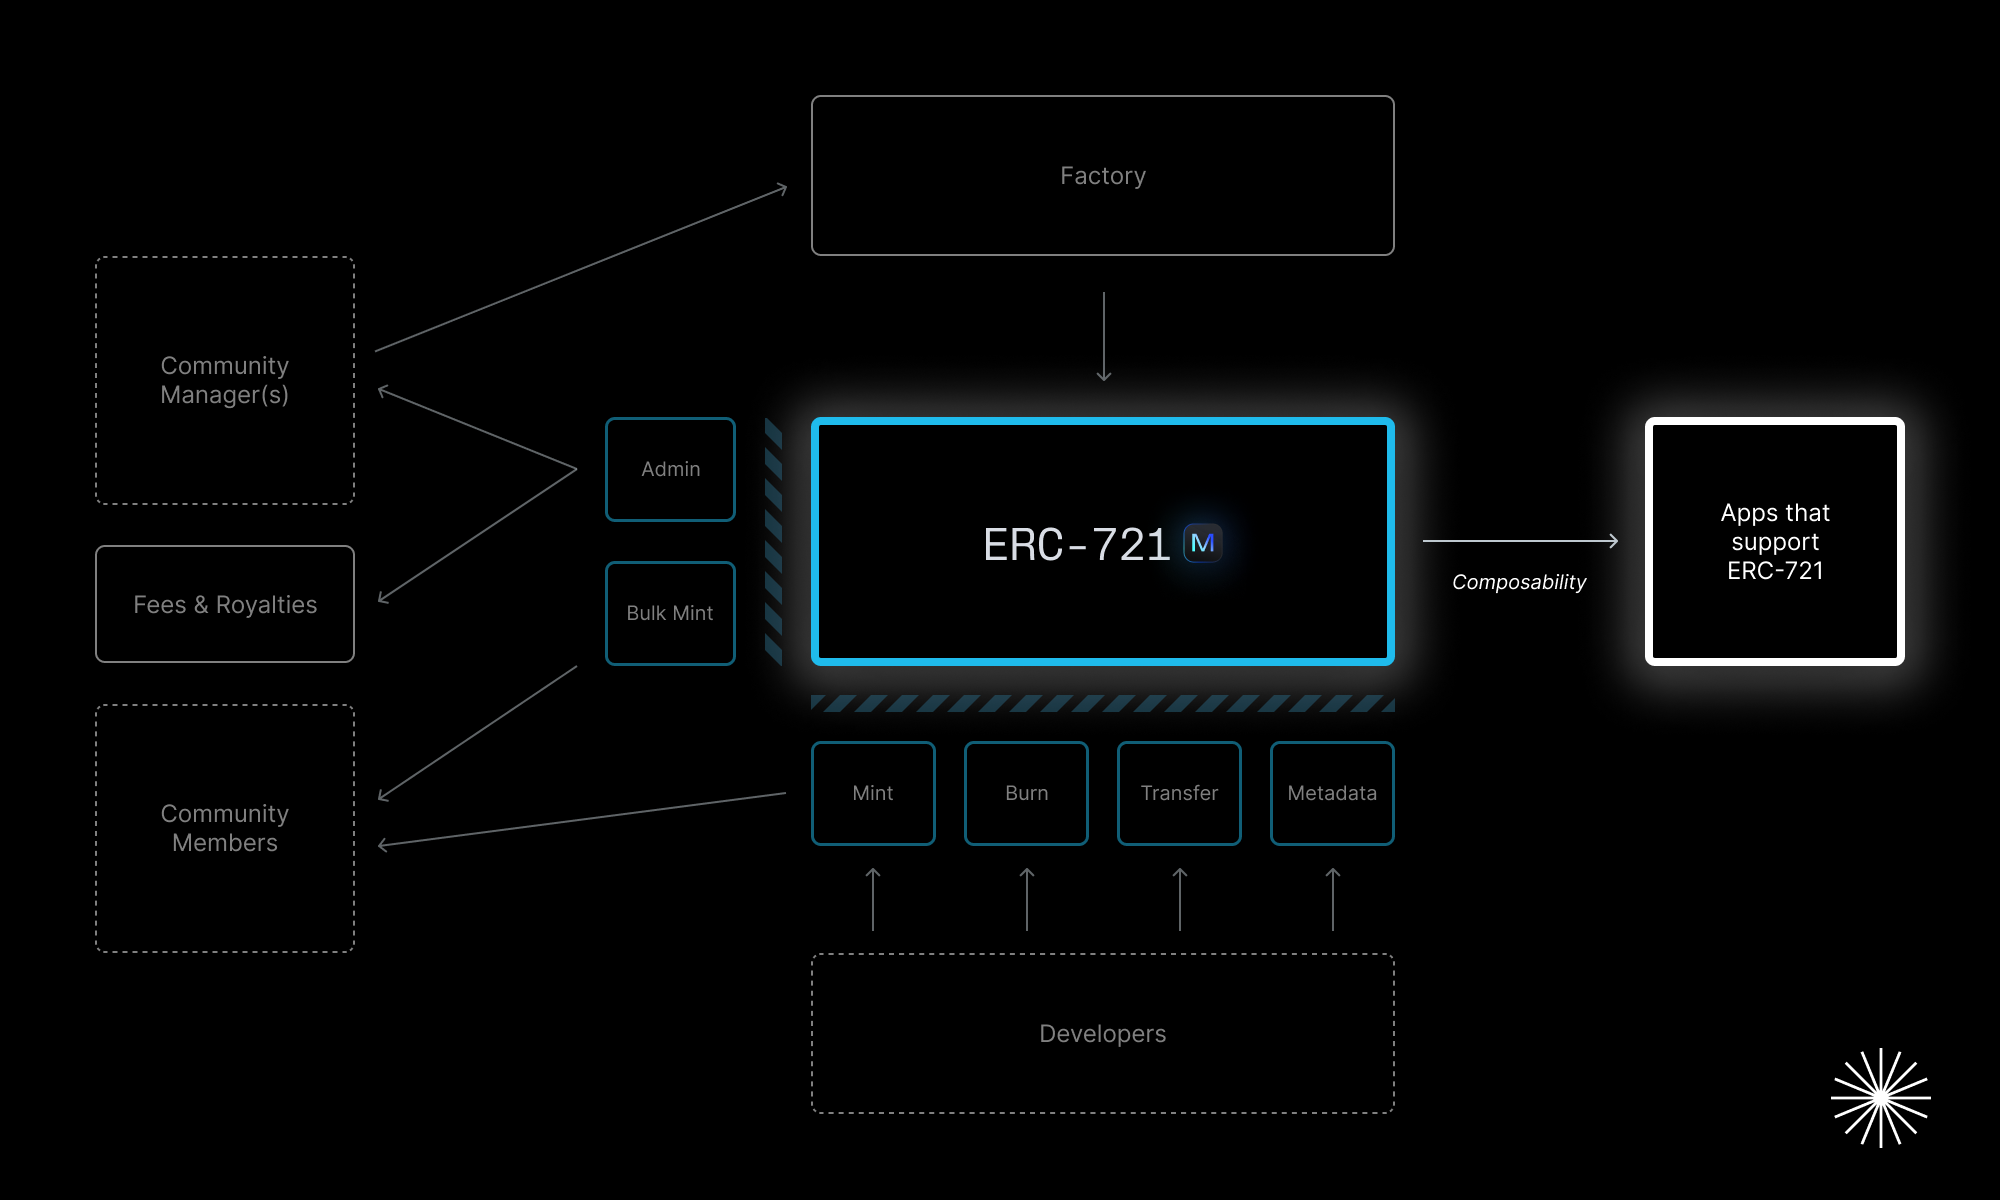 Collectives 可与所有支持 ERC-721 的应用相组合